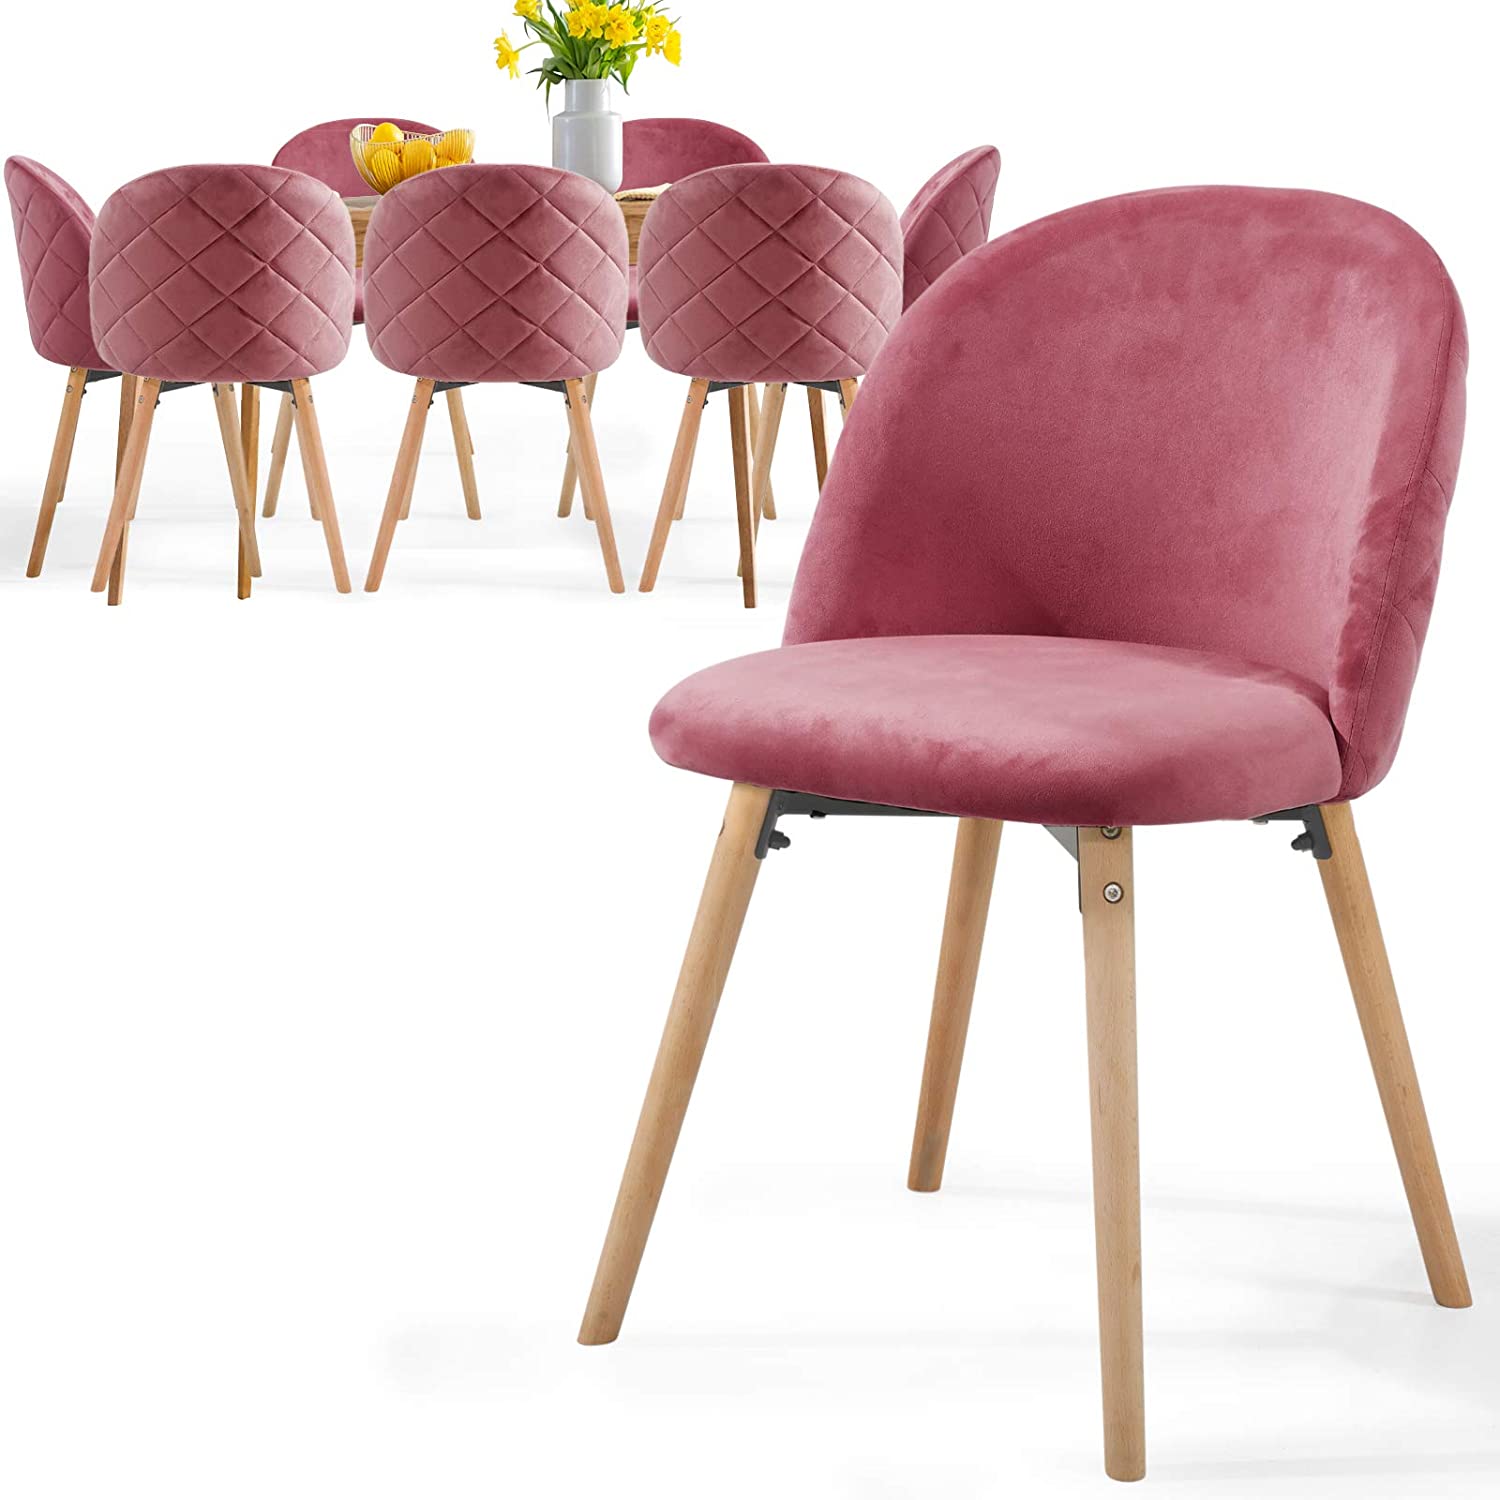 Eetkamerstoelen – Lounge stoelen – Scandinavisch – Retro – Vintage – Gestoffeerd – Set van 8 – Roze